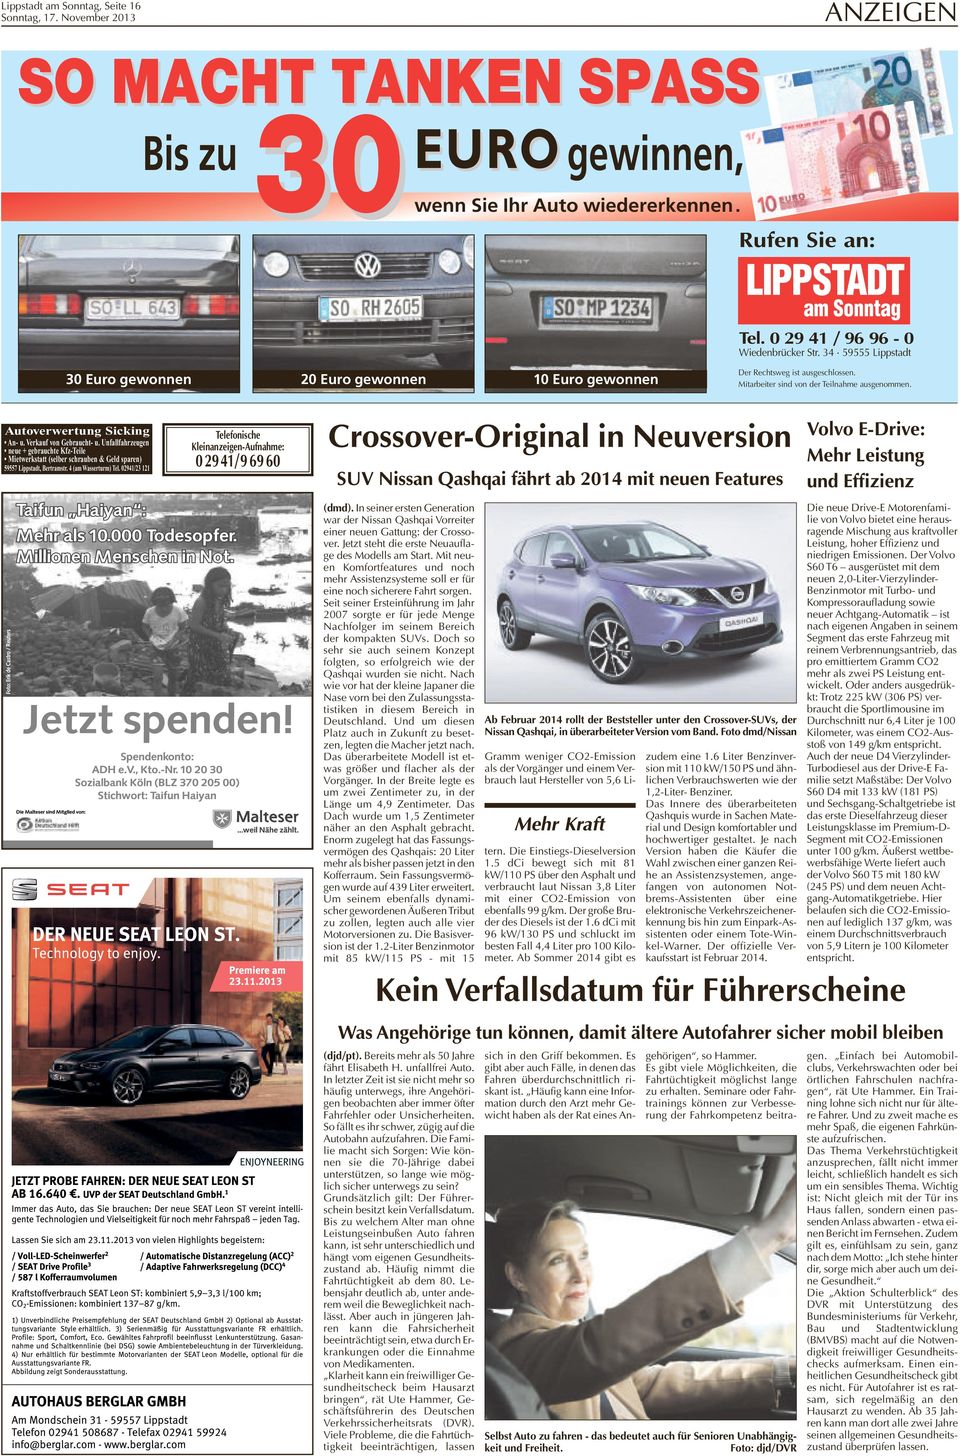 Verkauf von Gebraucht u. Unfallfahrzeugen neue + gebrauchte KfzTeile Mietwerkstatt (selber schrauben & Geld sparen) 59557 Lippstadt, Bertramstr. 4 (am Wasserturm) Tel.